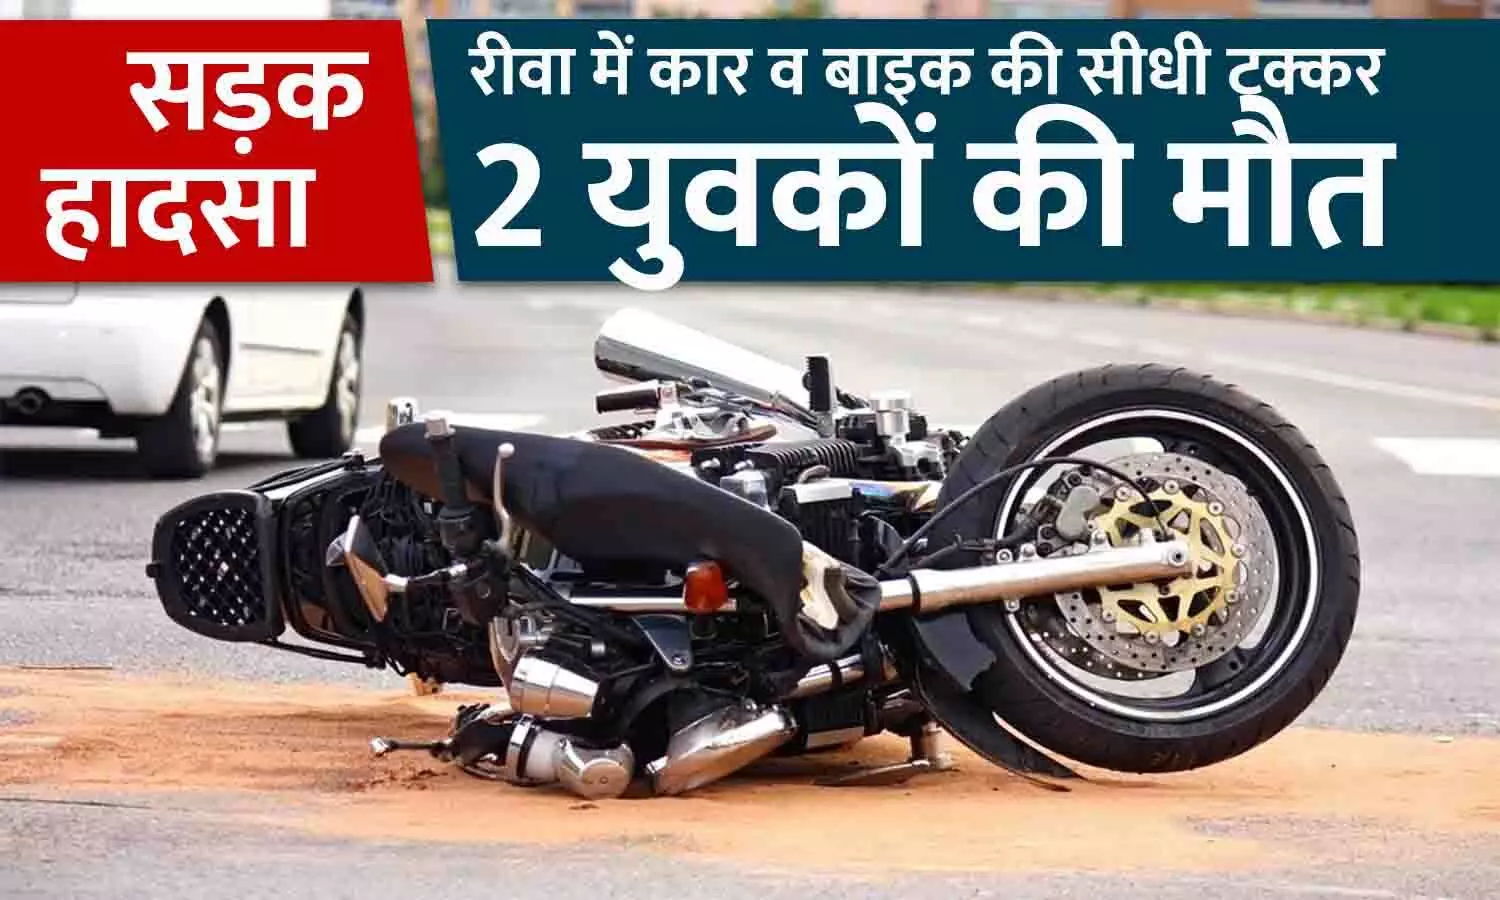 सड़क हादसा: रीवा में कार व बाइक की सीधी टक्कर, 2 युवकों की मौत